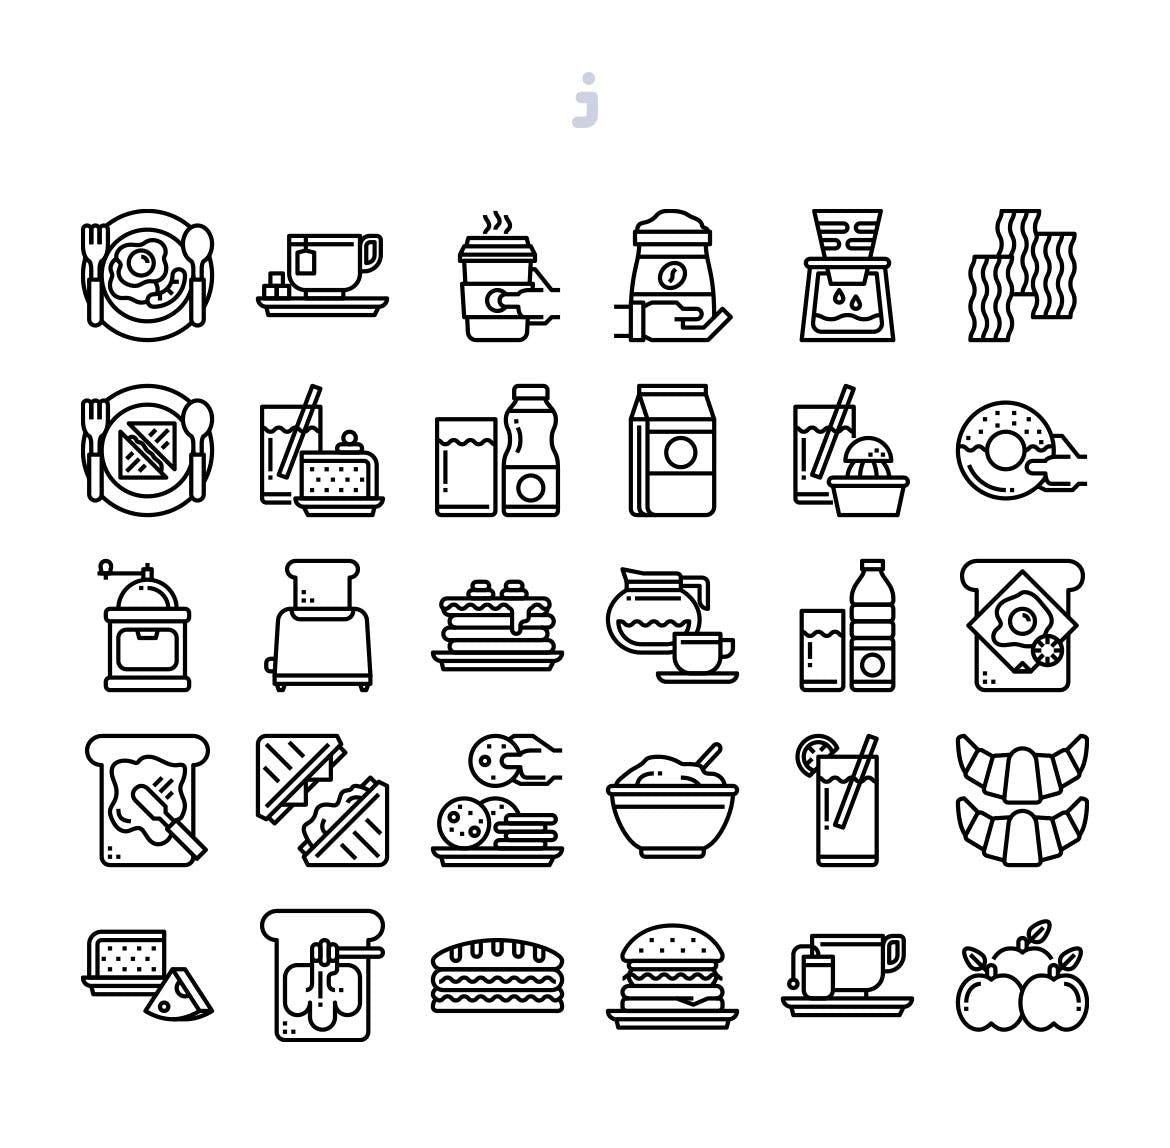 早餐主题矢量图标 30 Breakfast Icons